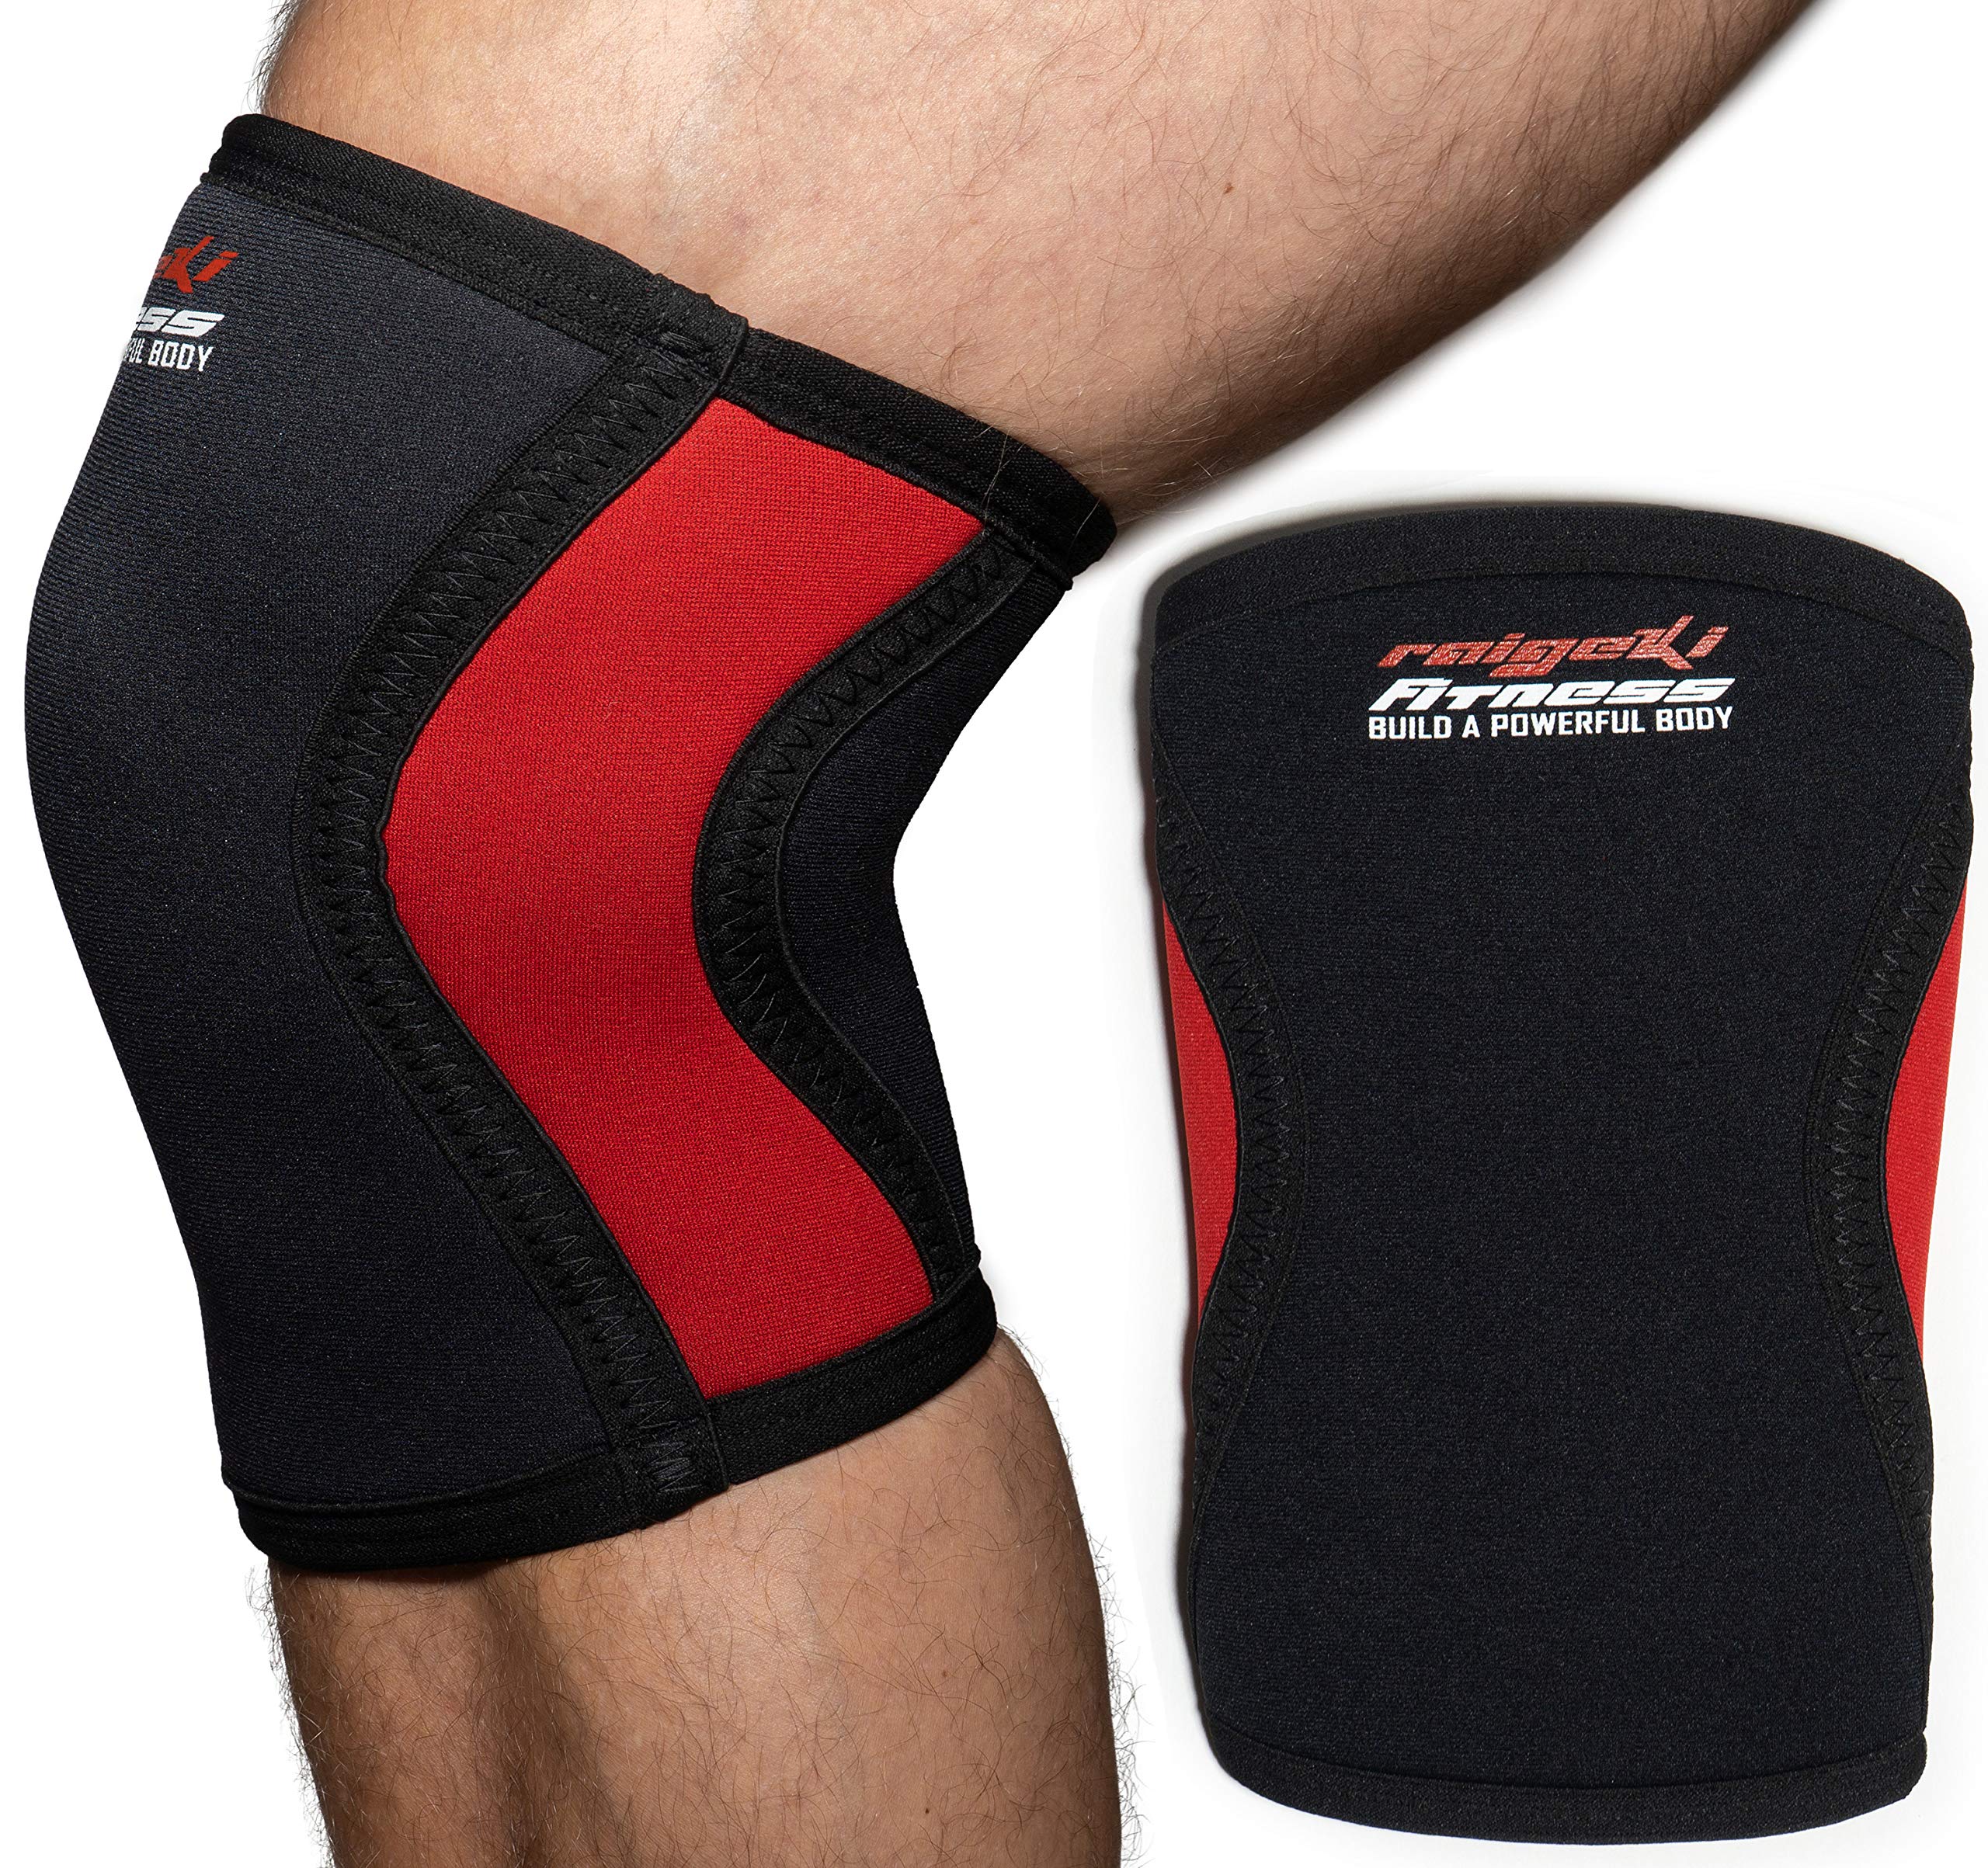 Raigeki Fitness Kniebandage 7mm Neopren [2er Set] Knee Sleeves (+ Trainingspläne) auch für Ellenbogen, Kniestütze, Kniewärmer für Krafttraining, Crossfit, Bodybuilding & Kampfsport (S)